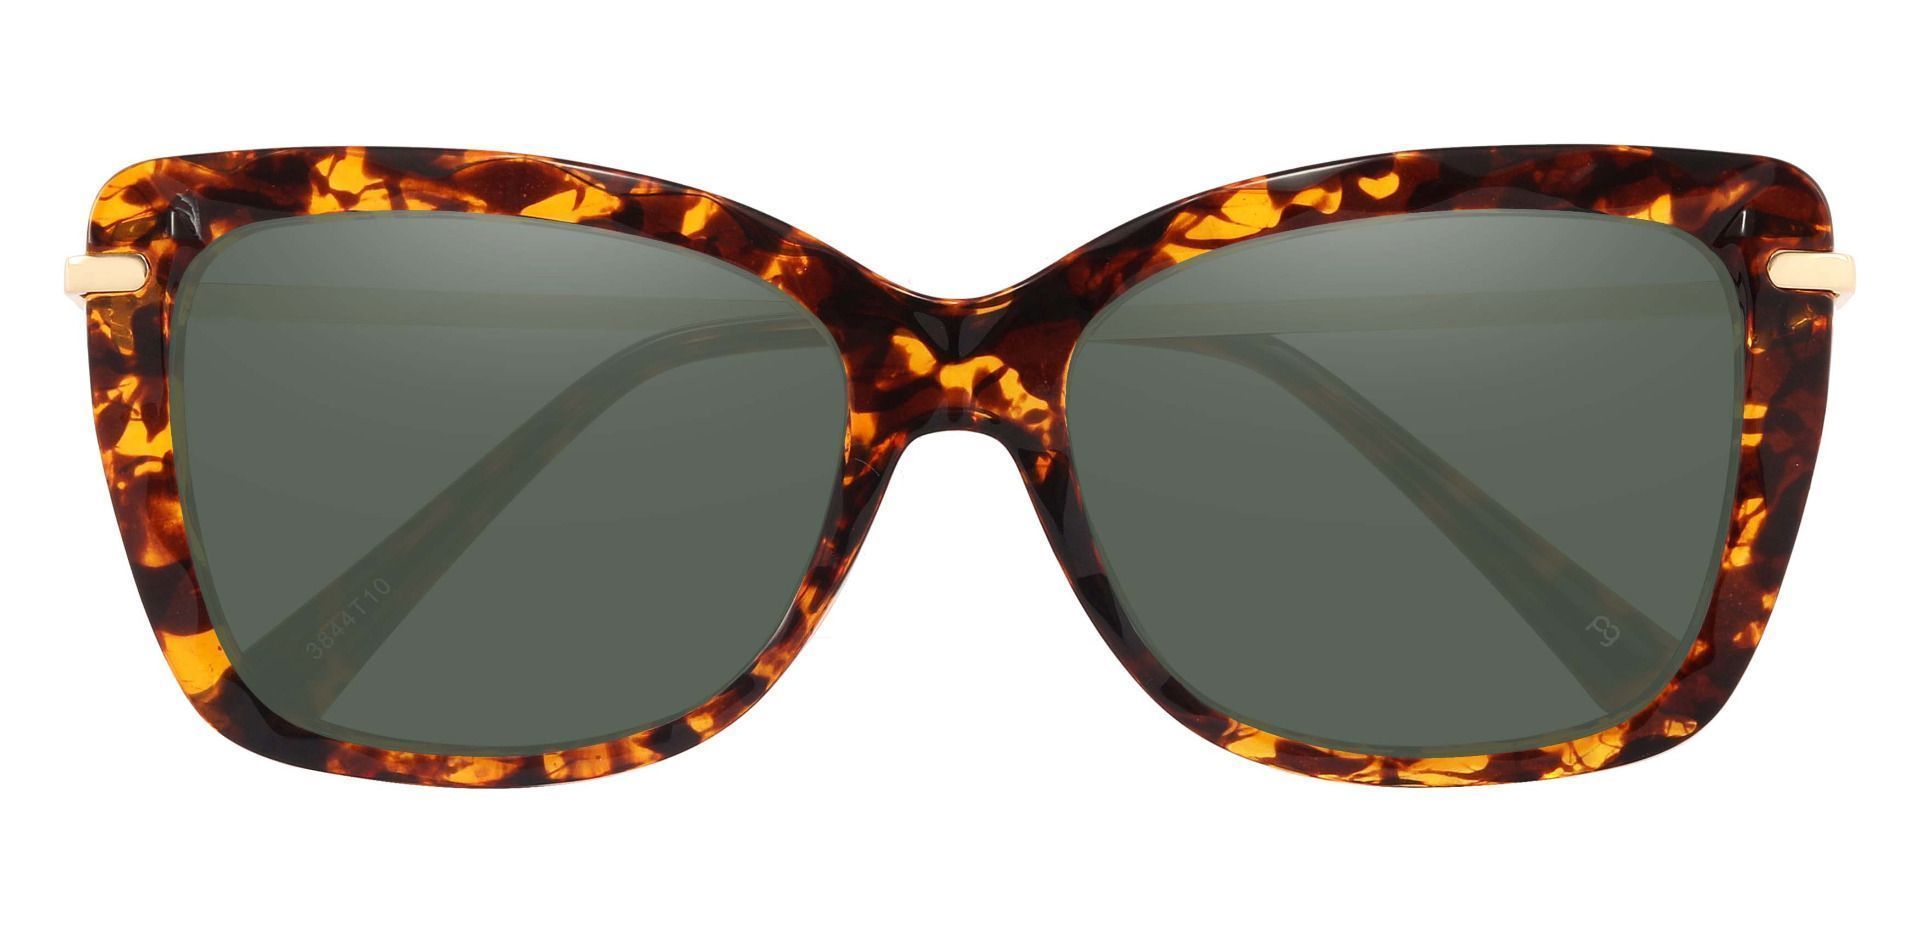 Shoshanna Rectangle Prescription Sunglasses - Tortoise Frame With Green Lenses